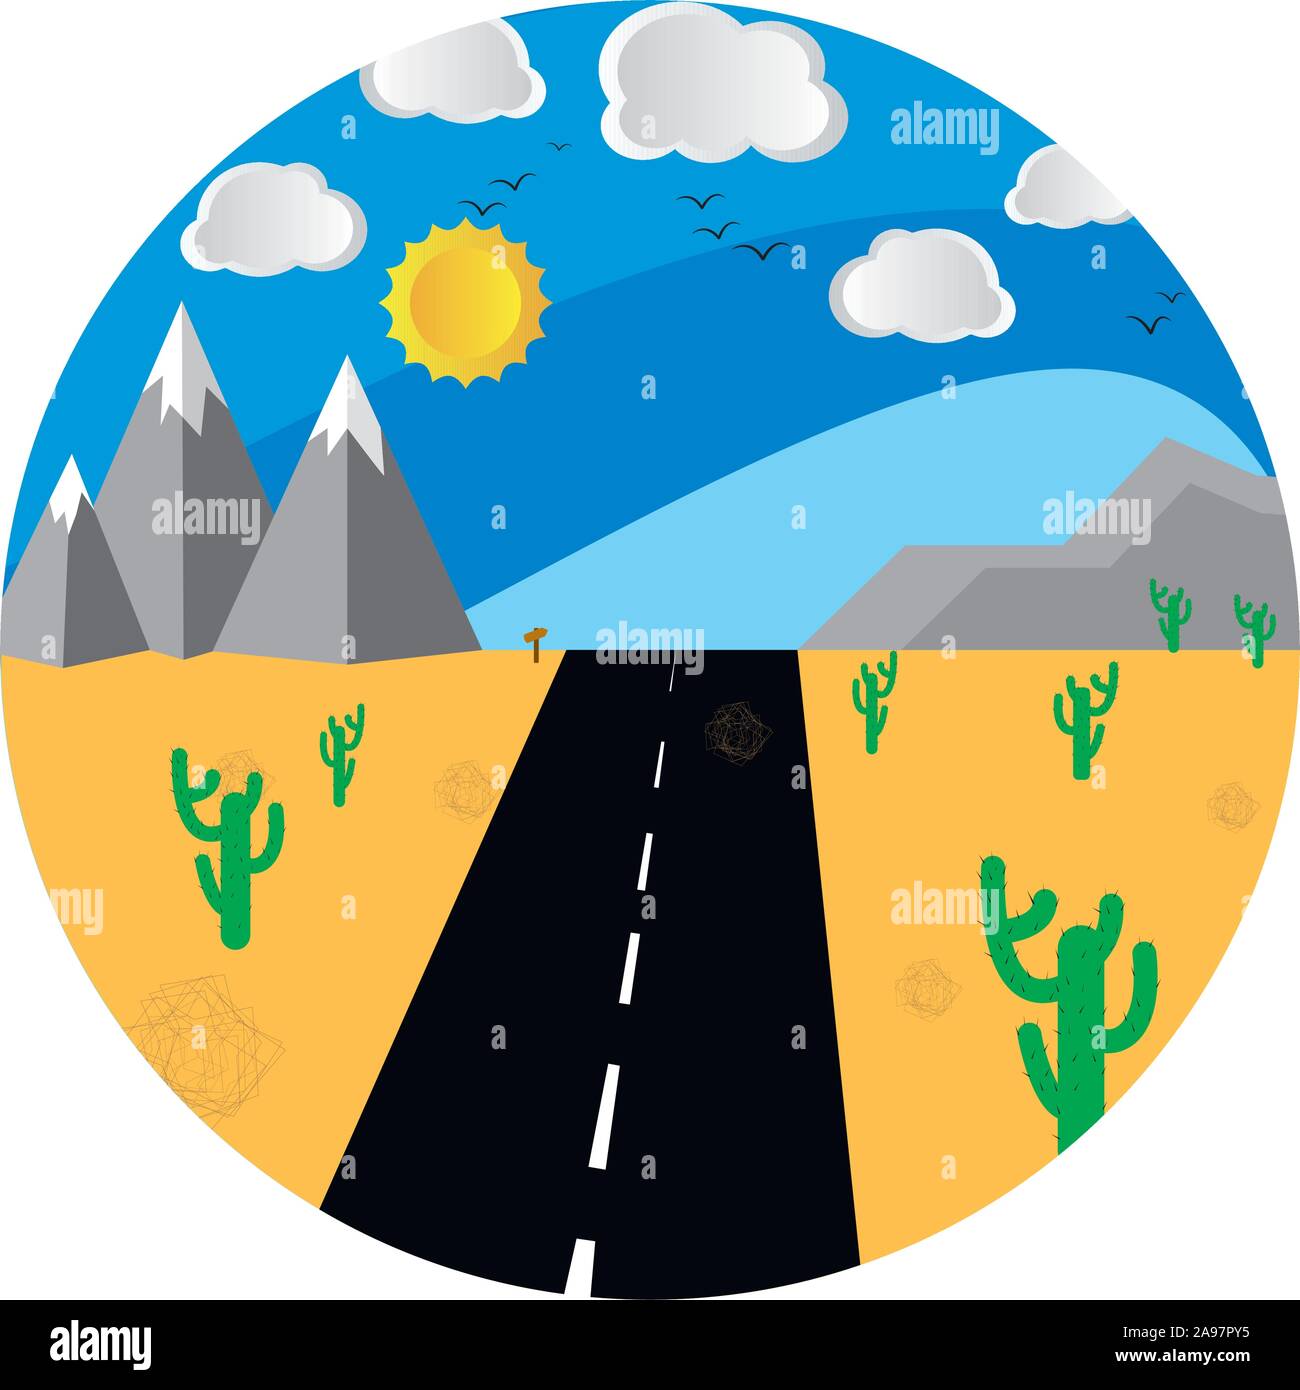 Billet wanderlust cartoon coloré fond paysage, avec perspective road, montagne, soleil et nuages. Choisissez la destination dans le monde et rendez-vous. Grap Illustration de Vecteur